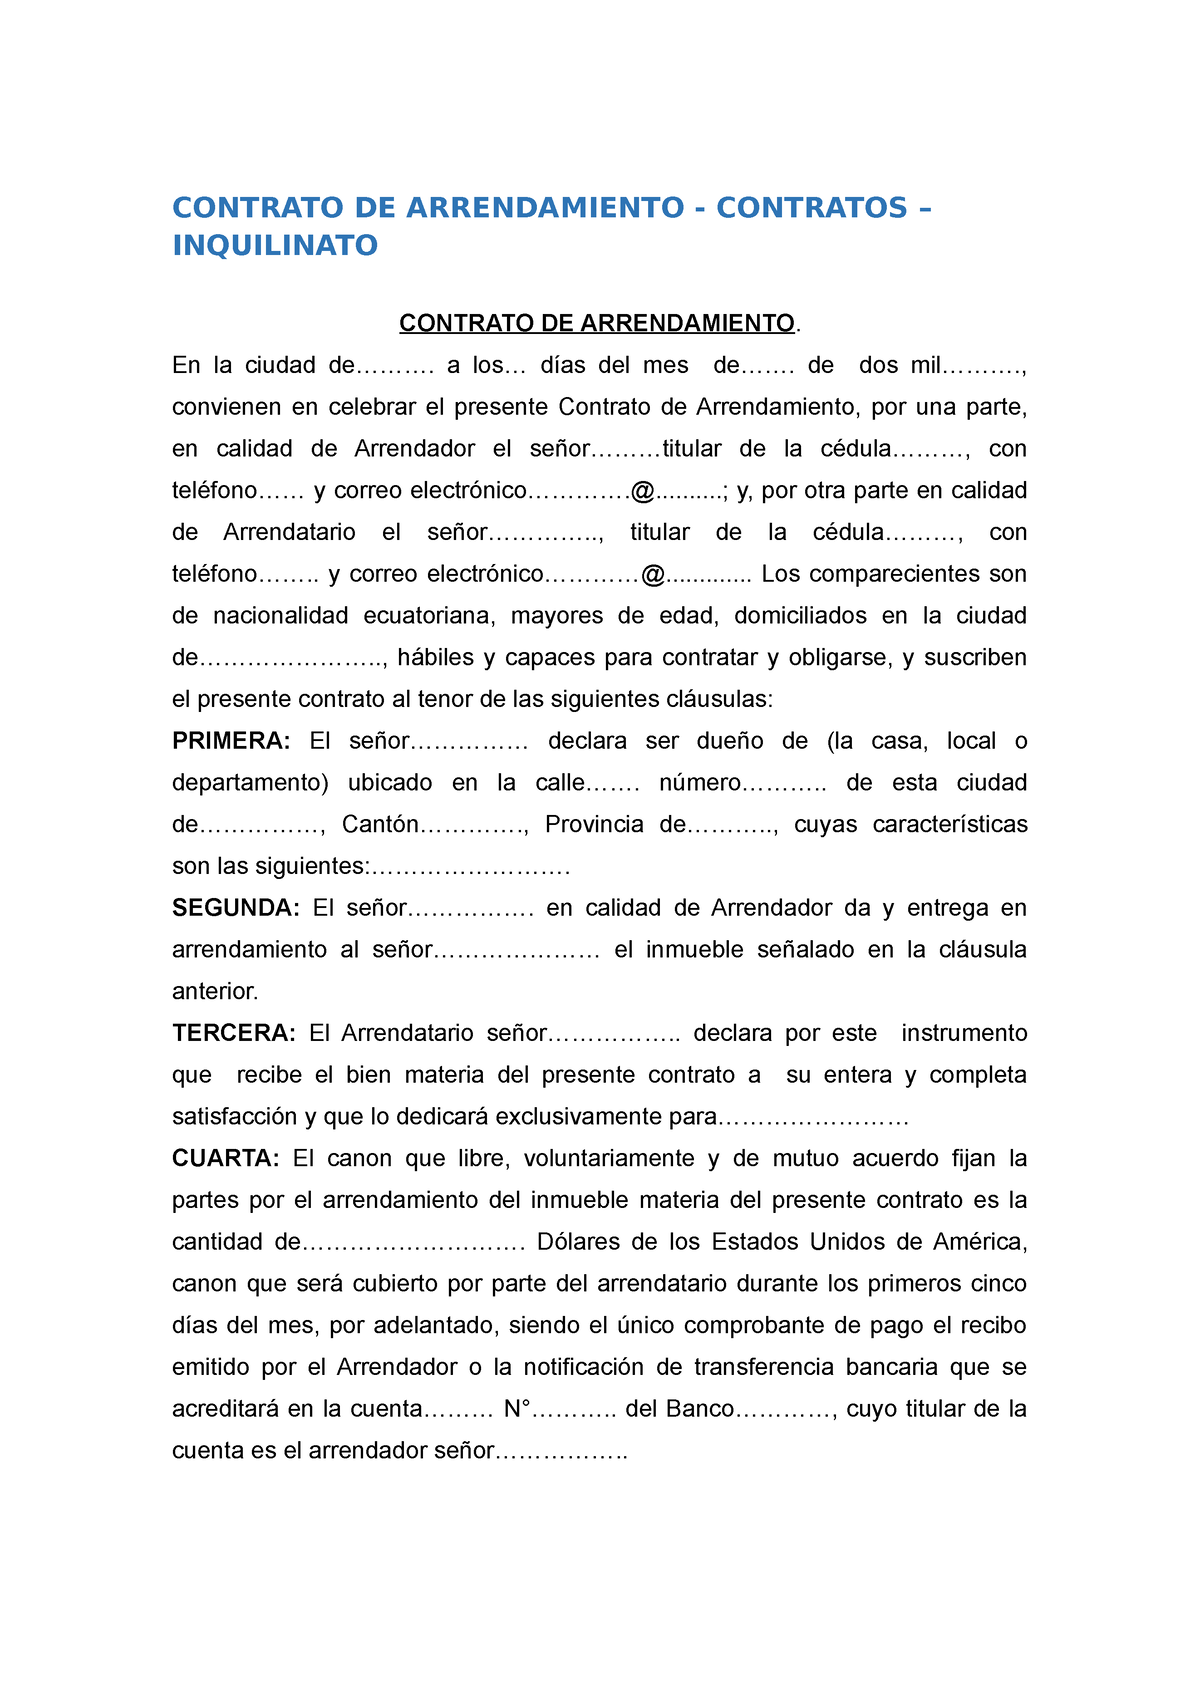 Contrato De Arrendamiento Contrato De Arrendamiento Contratos Inquilinato Contrato De 4286